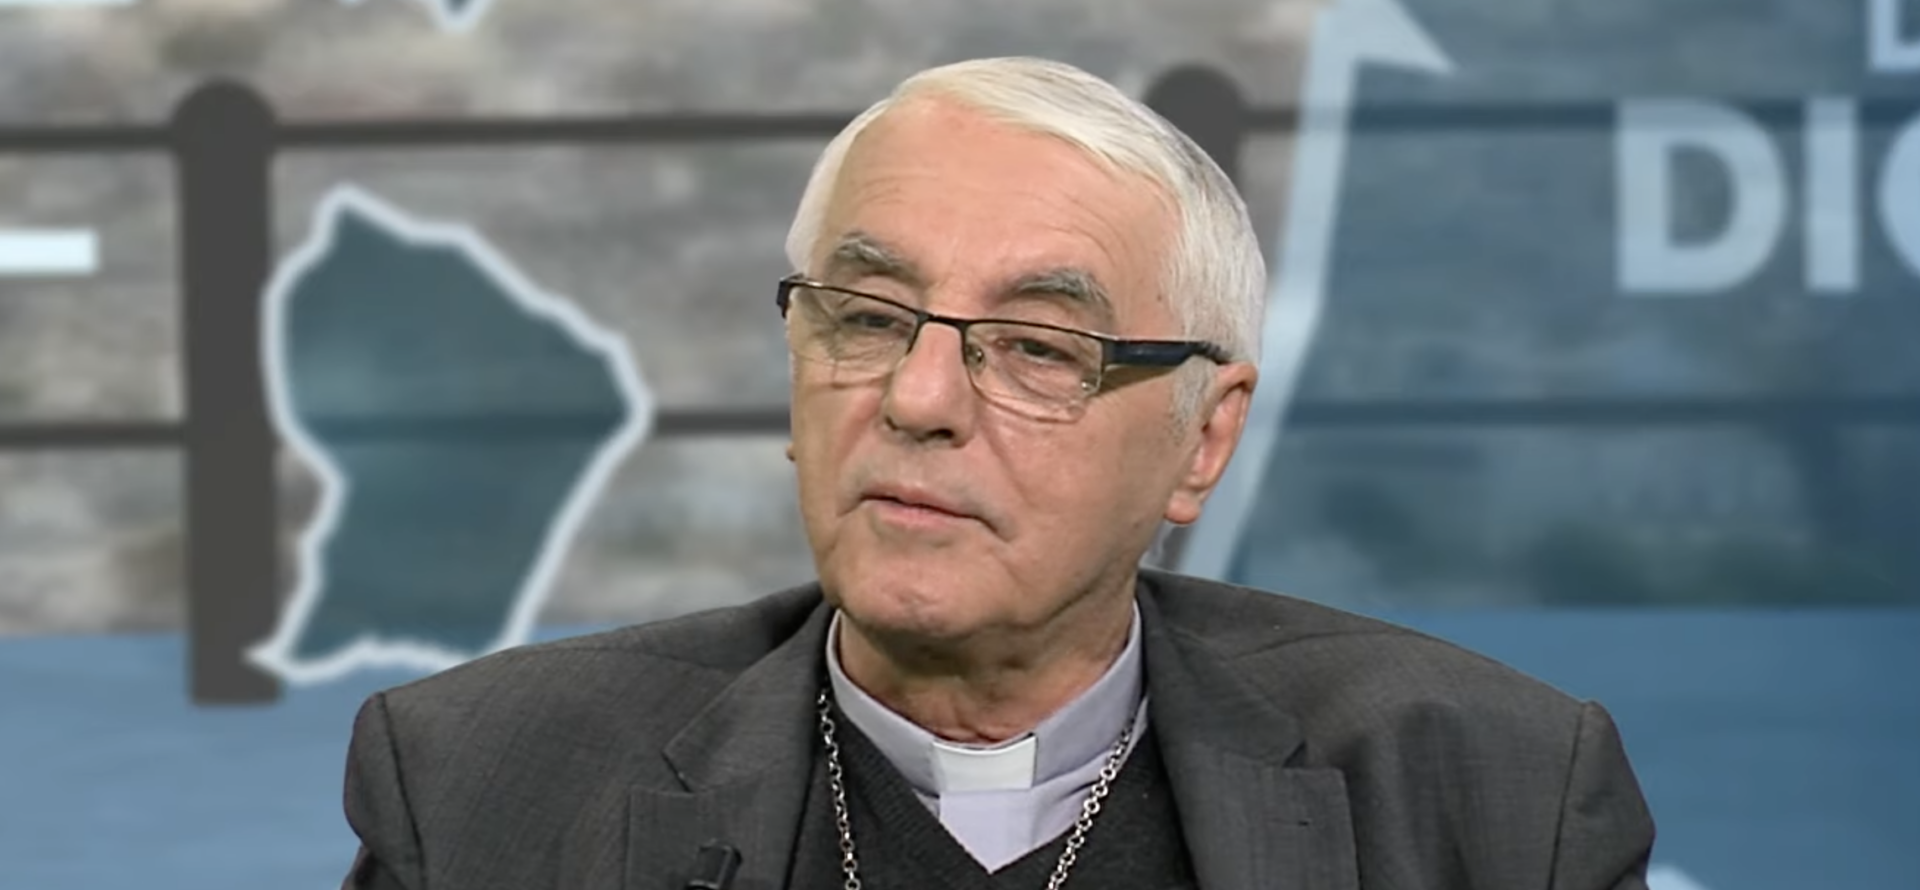 Mgr Michel Santier a été sanctionné par Rome pour des abus sur personnes majeures | capture d'écran KTO-TV